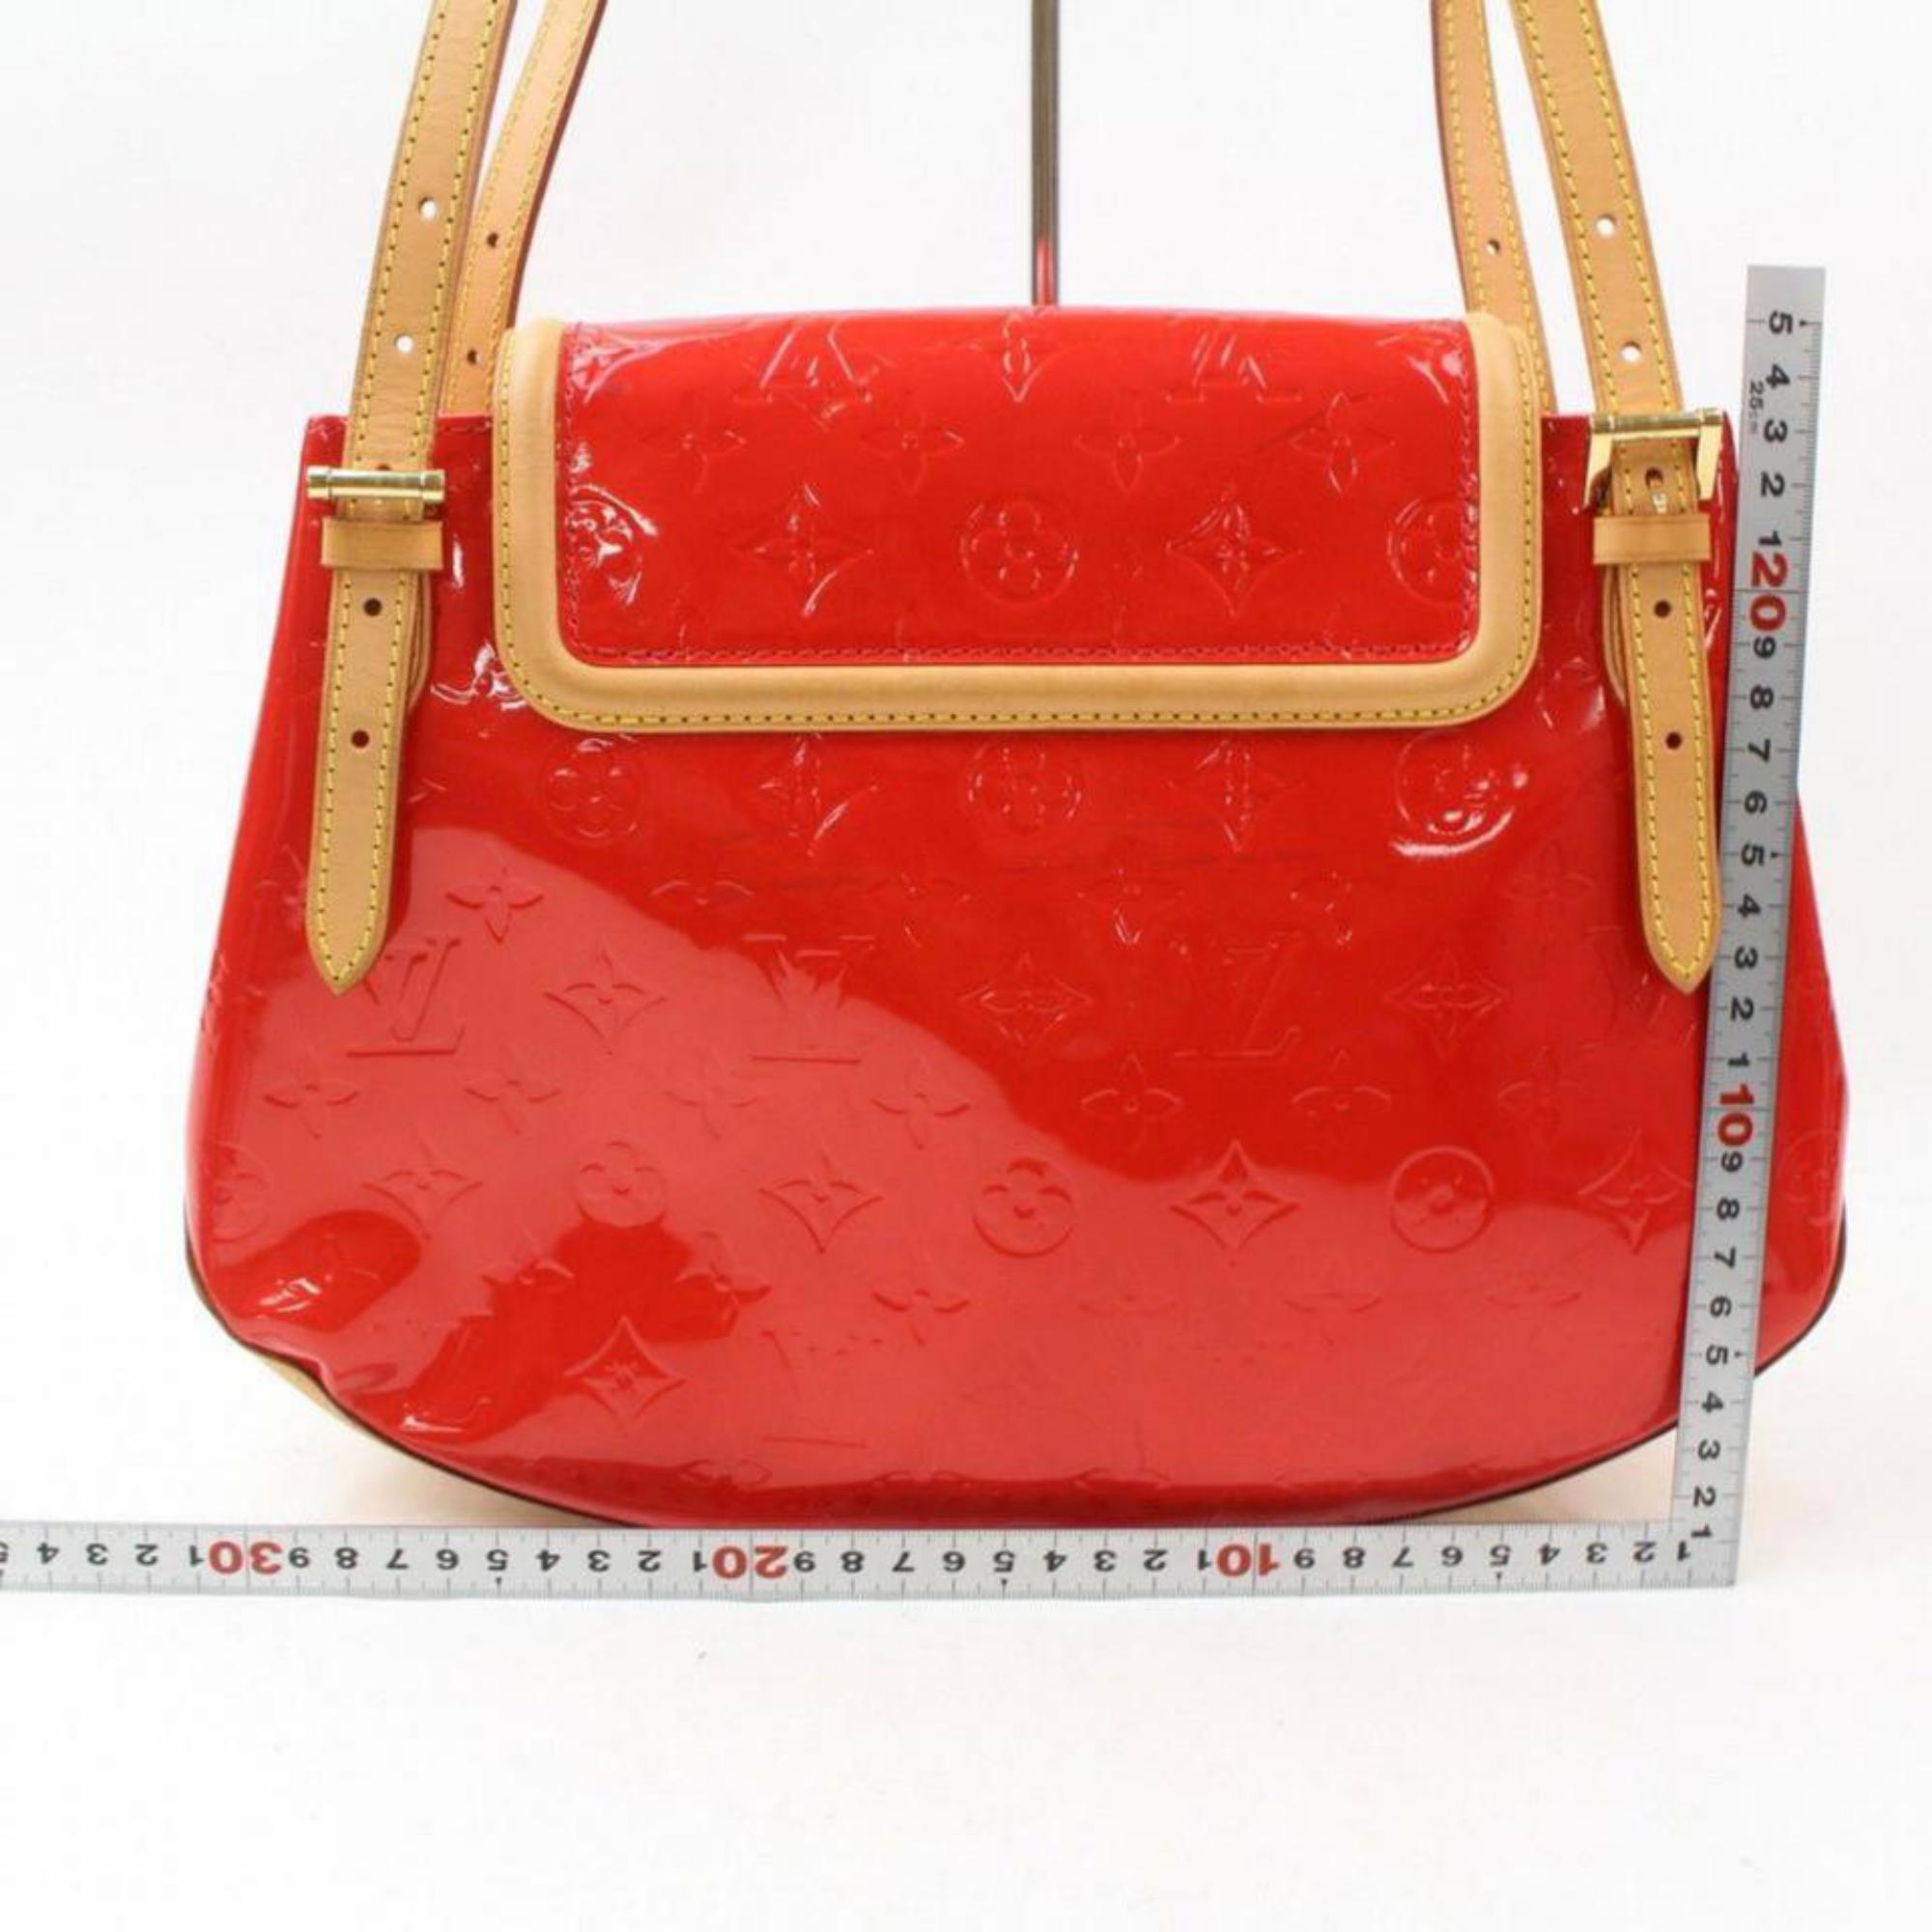 Louis Vuitton Biscayne Bay Gm 869144 Red Monogram Vernis Leather Shoulder Bag For Sale 5